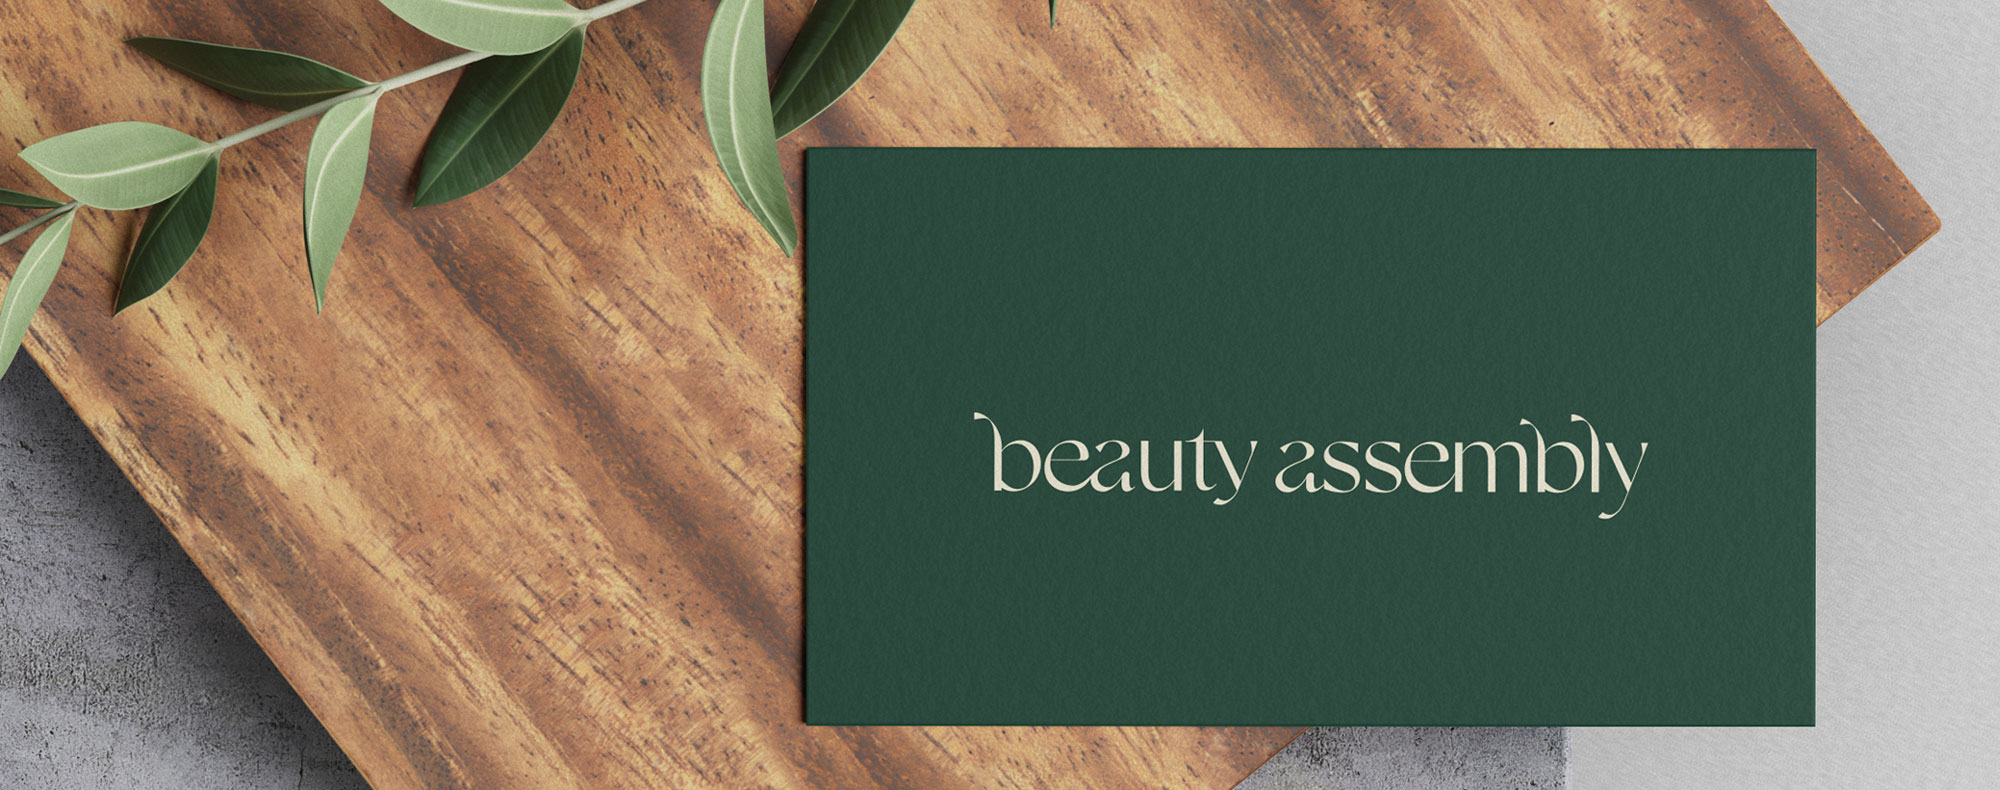 https://zestybrands.ca/wp-content/uploads/2022/11/vancouver-branding-companies-zesty-brands-salon-design-beauty-assembly.jpg